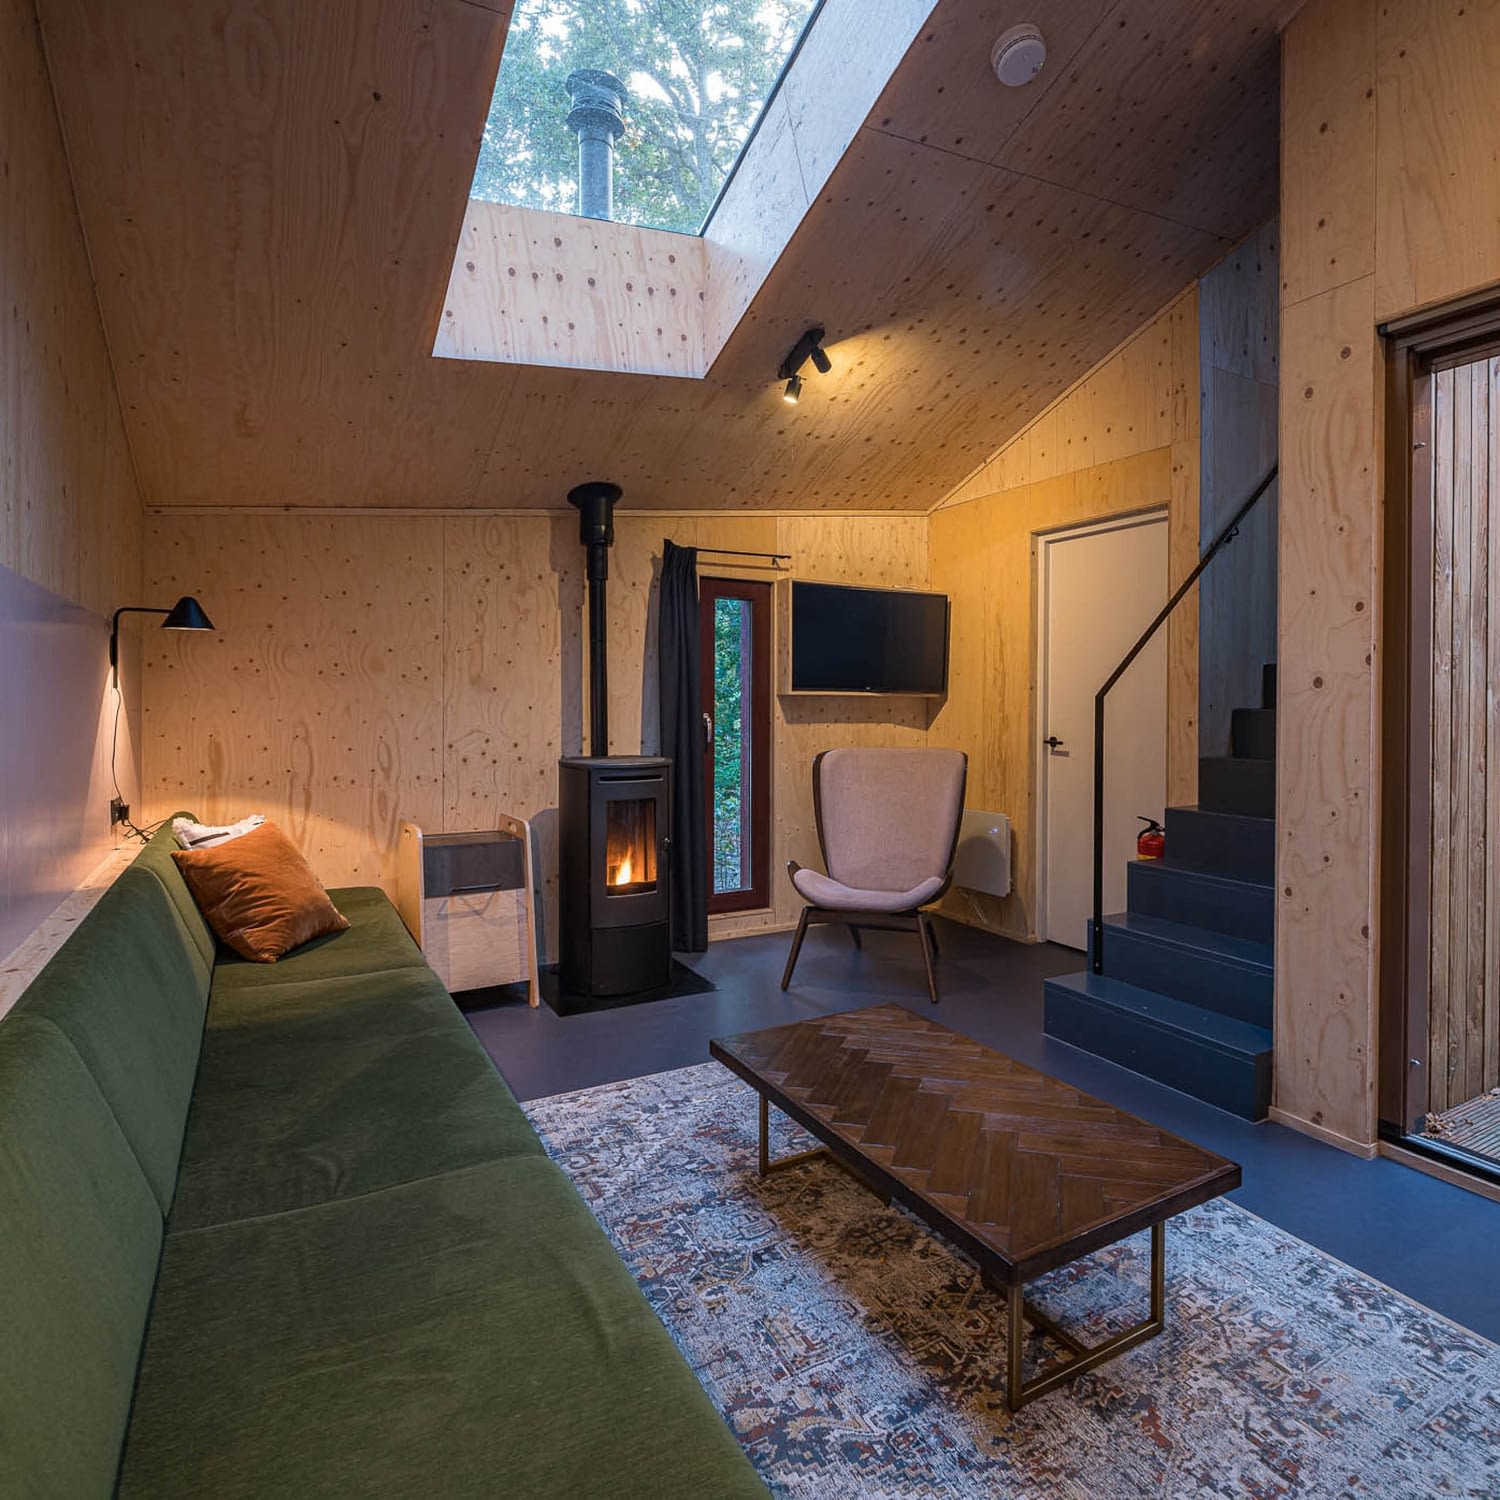 Studio Brandvries | interieurontwerp boshuisjes vlieland houtskeletbouw door architectenbureau rotterdam